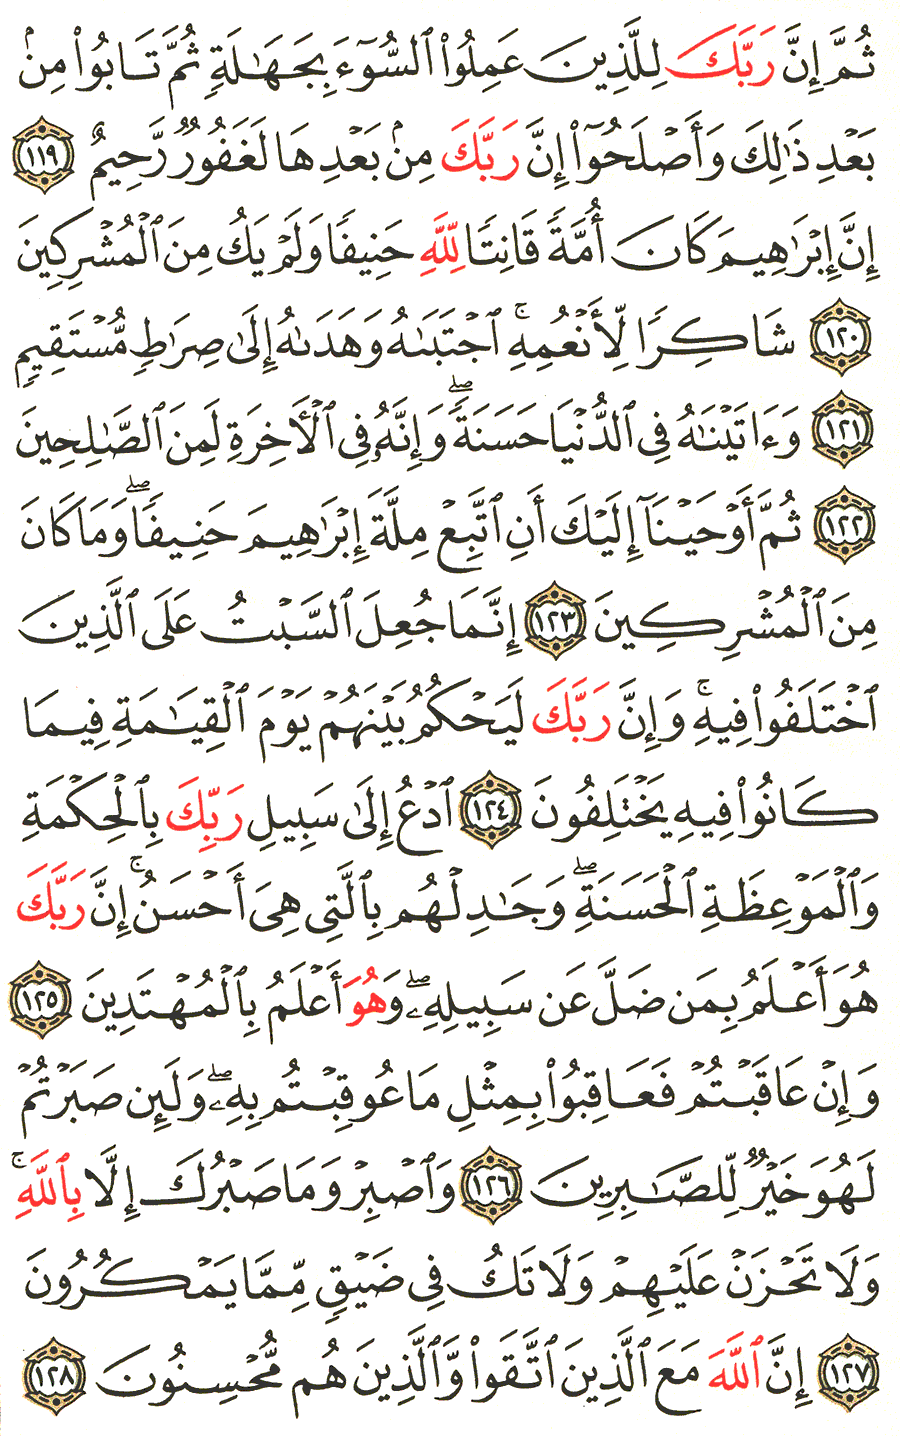 الصفحة رقم 281  من القرآن الكريم مكتوبة من المصحف